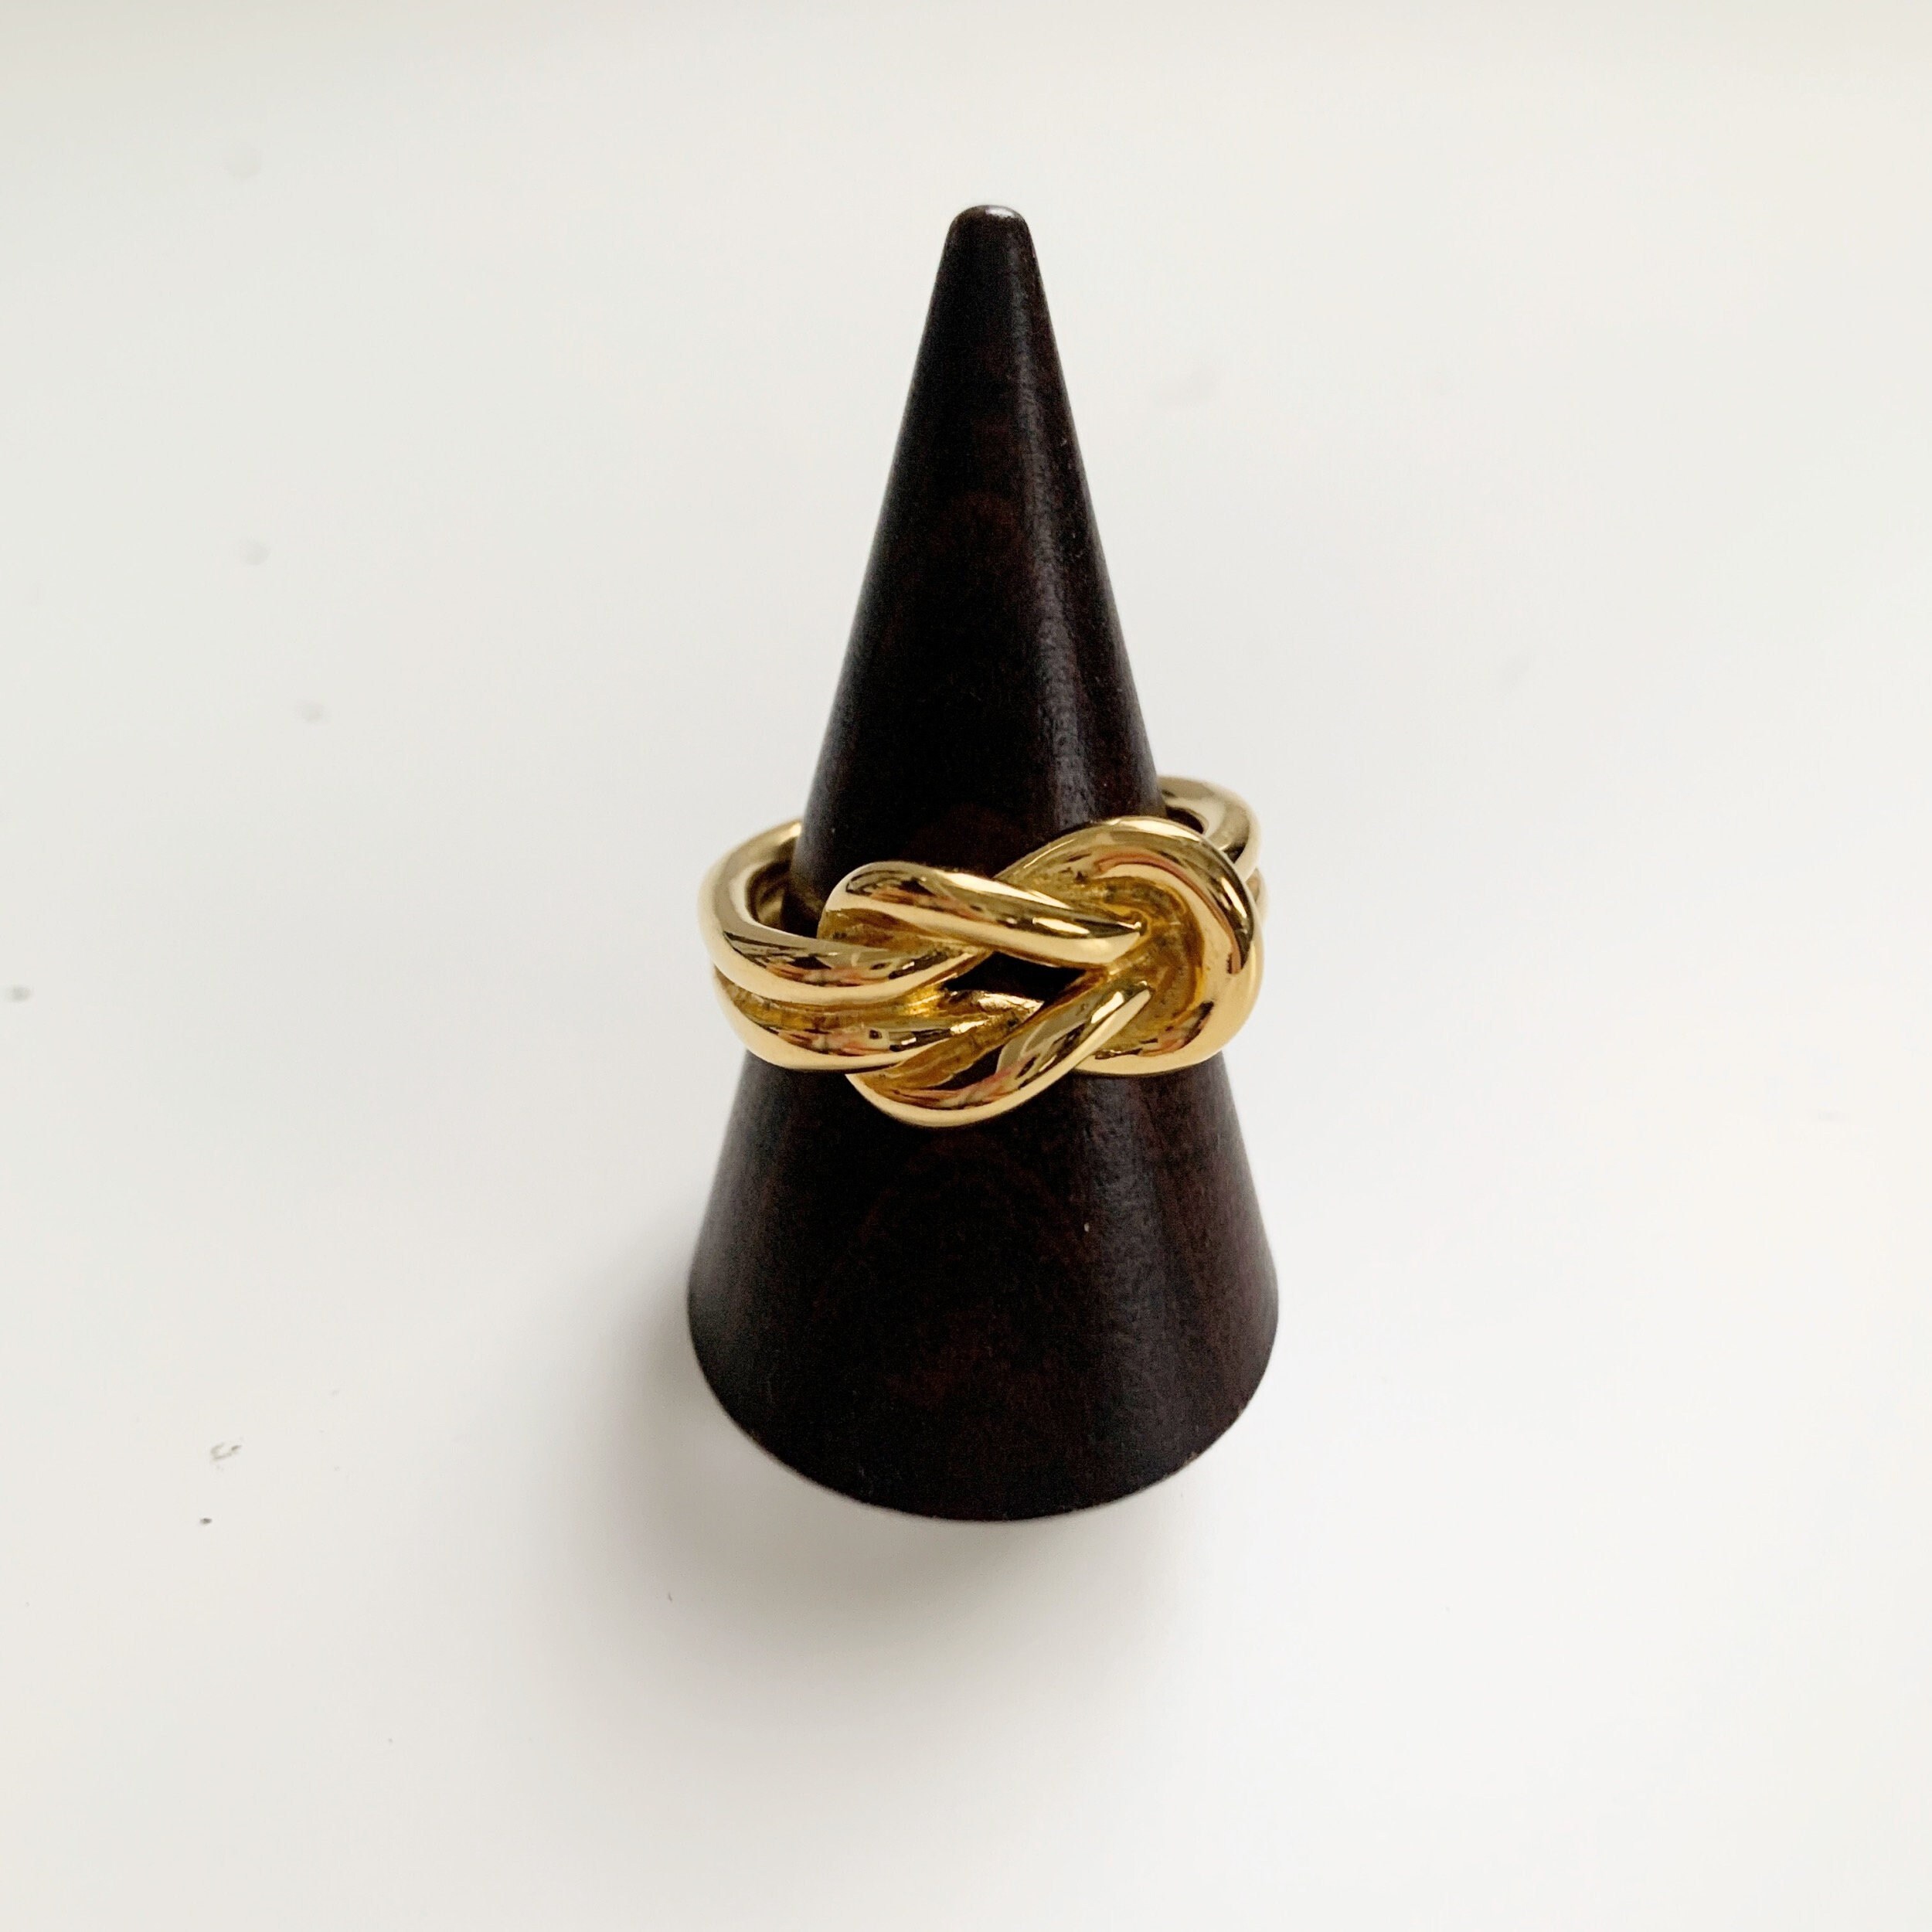 HERMES Polished Brass Regate Scarf Ring Rose Gold 1272748